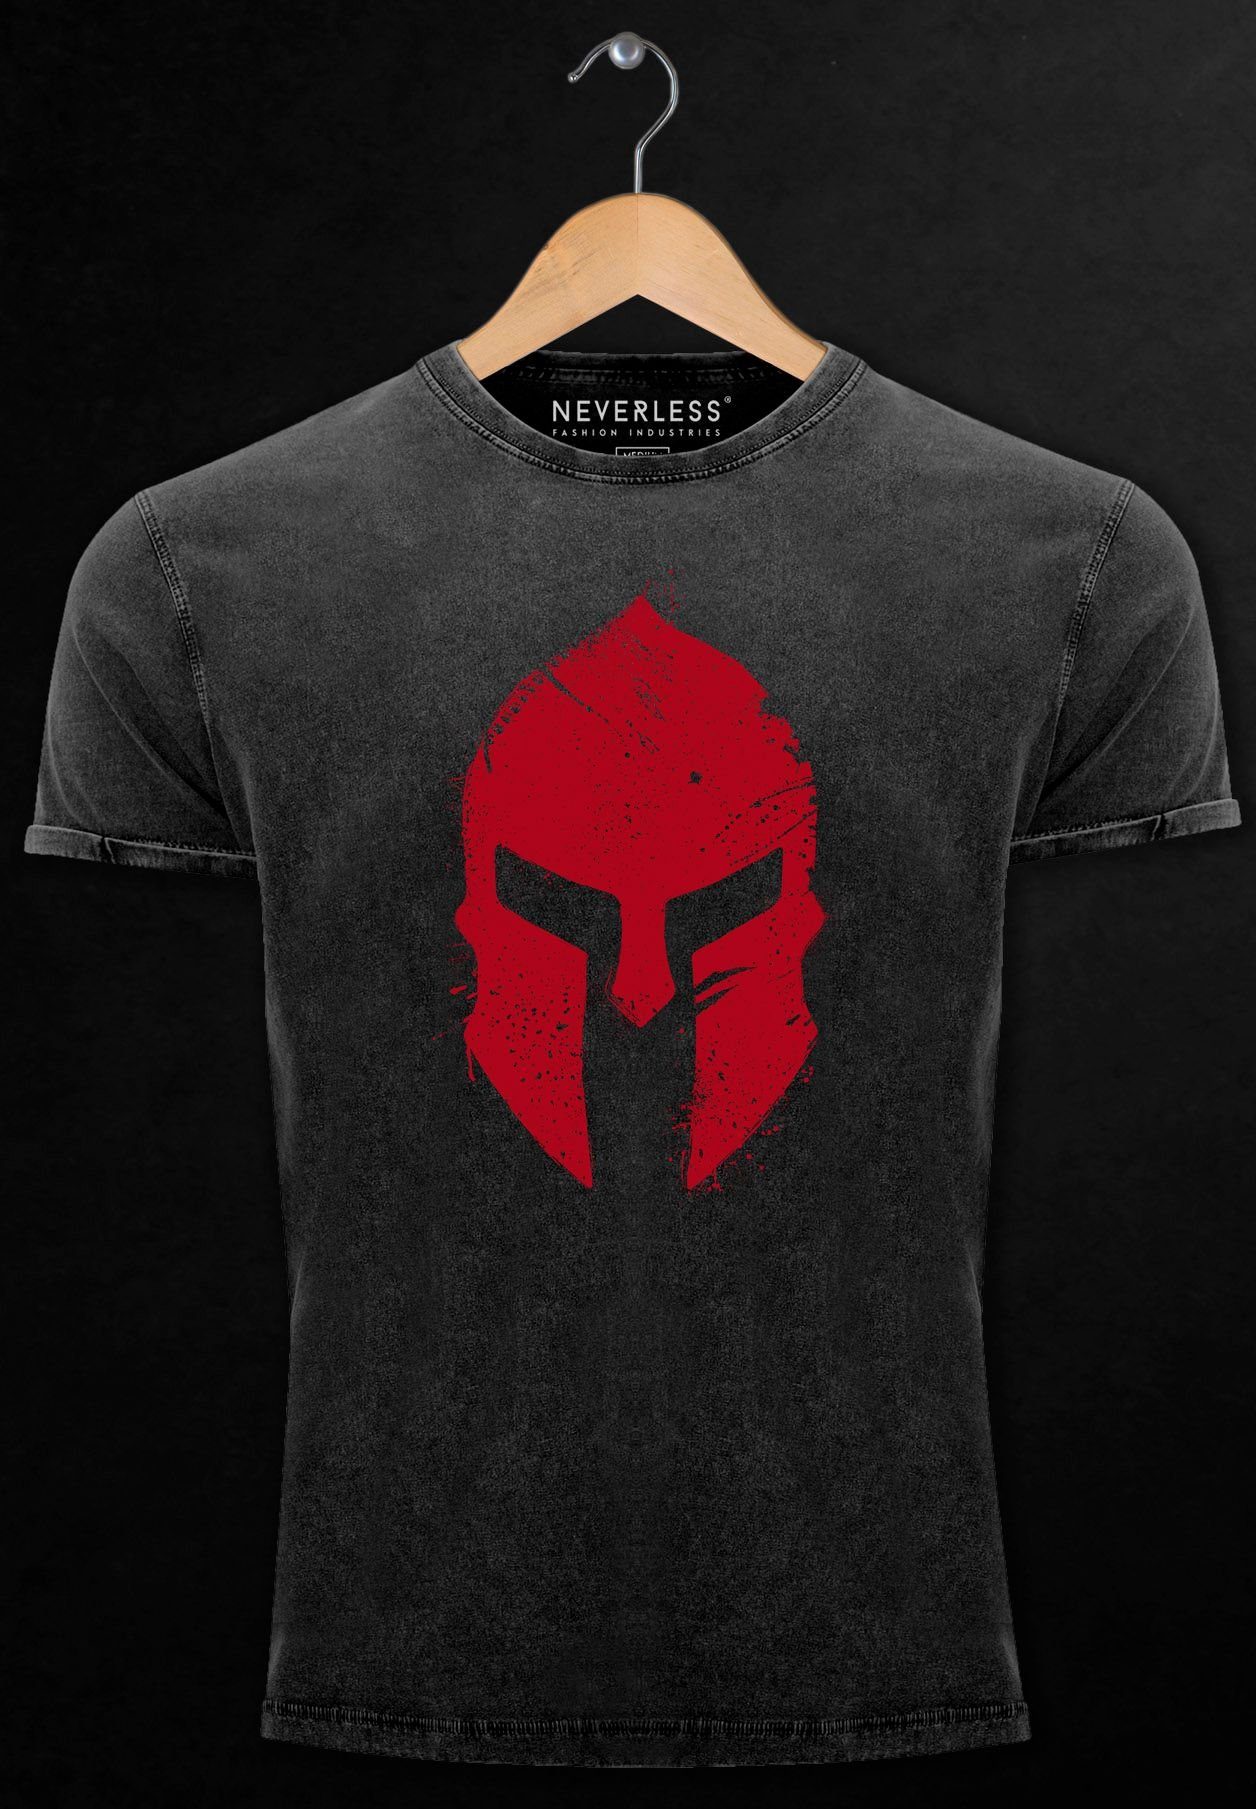 Herren schwarz-rot Sparta-Helm mit Neverless Krieger Print-Shirt Shirt Vintage Warr Aufdruck Gladiator Print Print